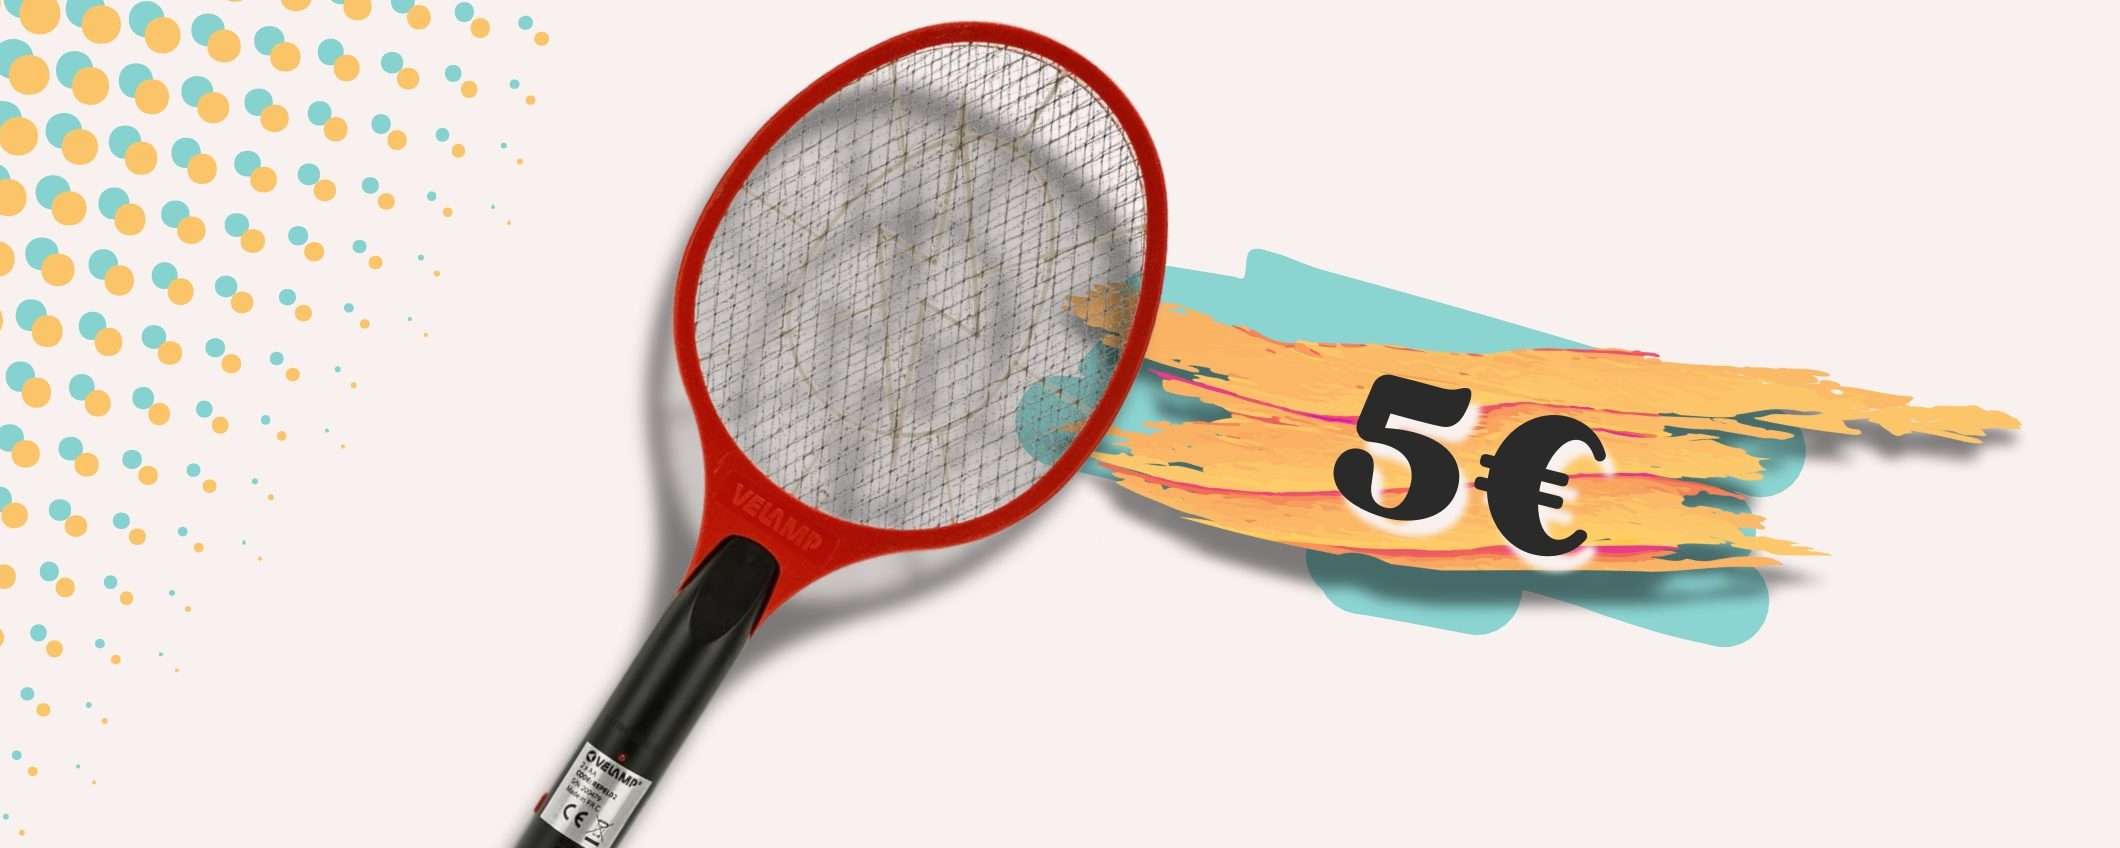 Una racchetta elettrica non per il tennis ma per le ZANZARE: prezzo SHOCK